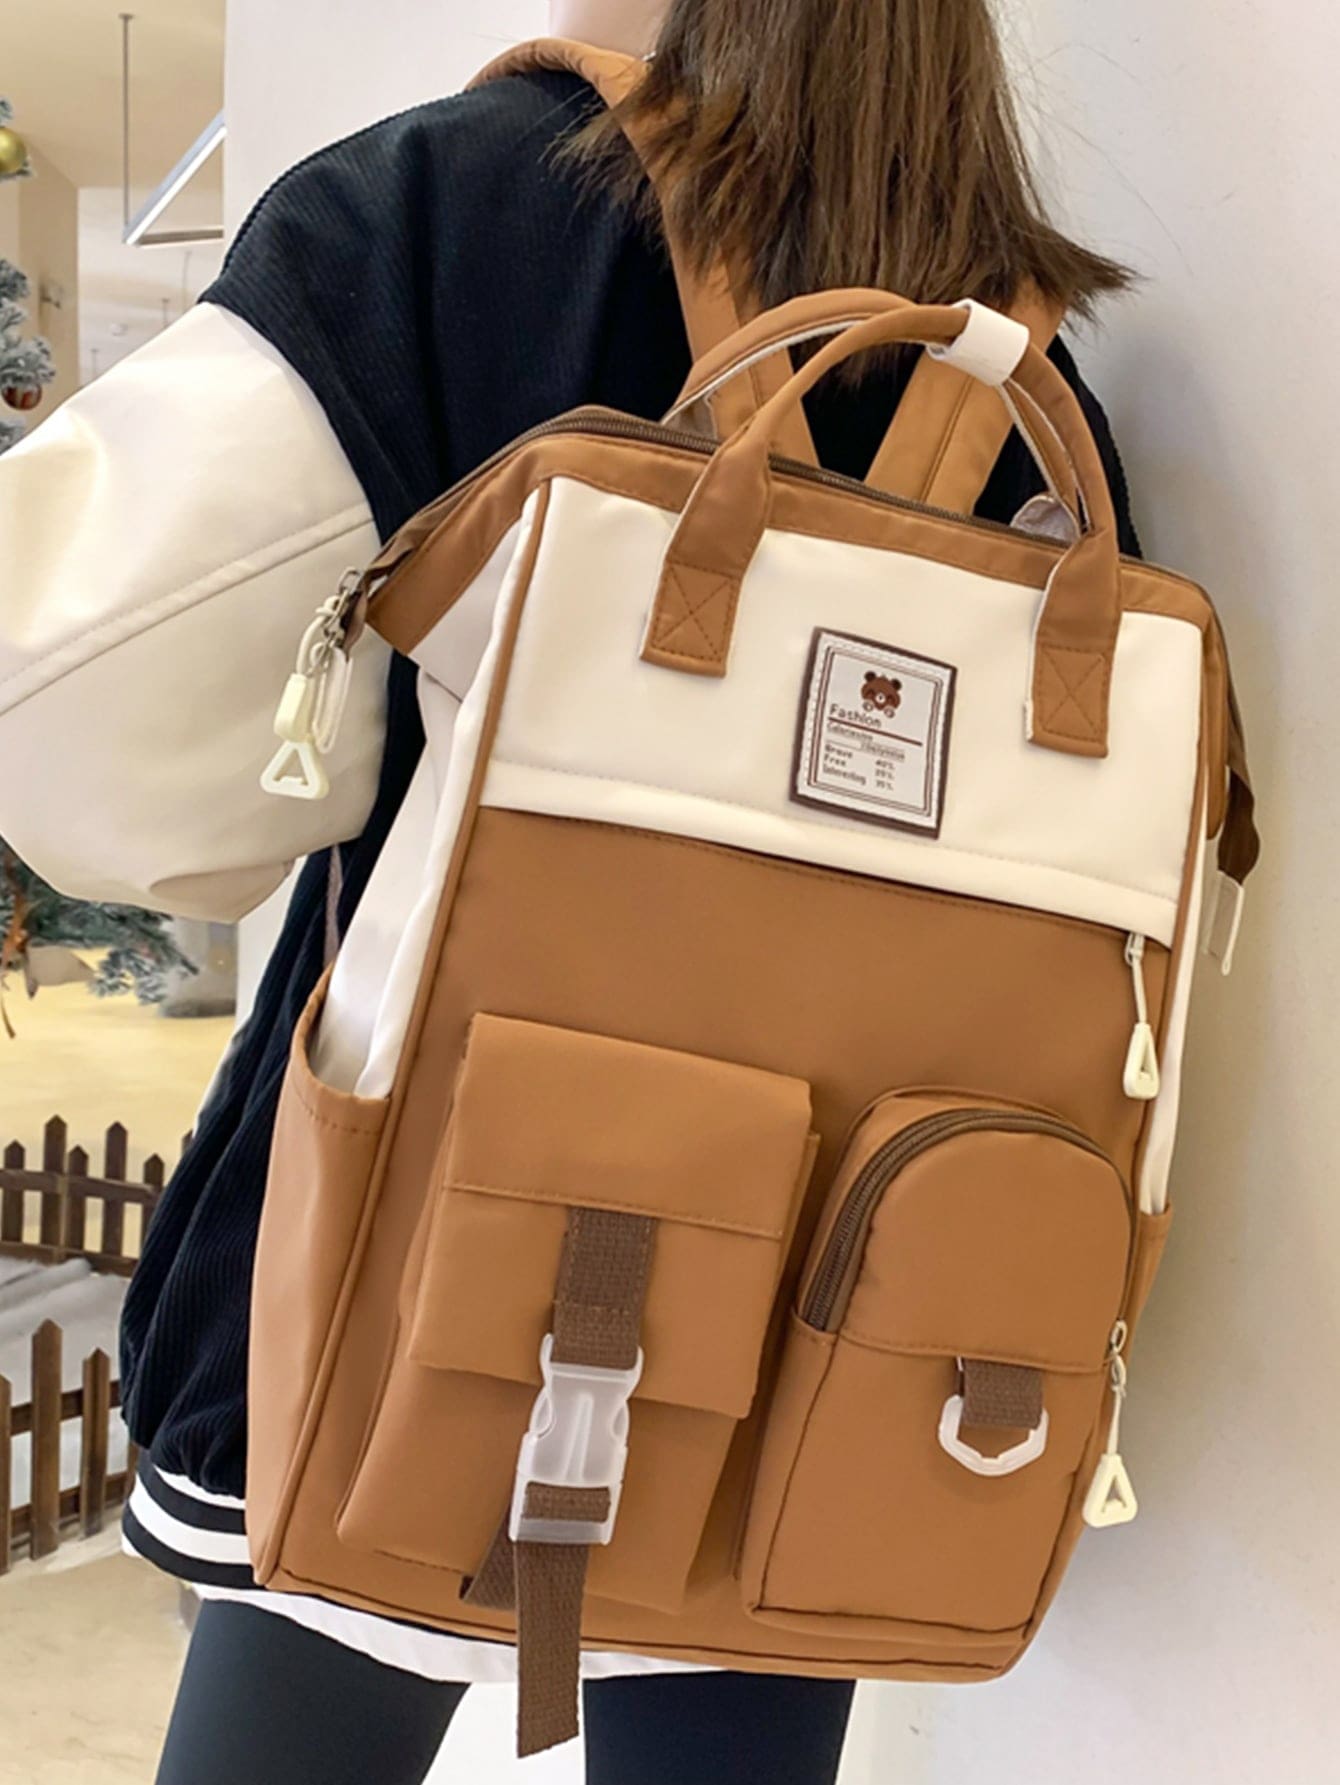 мясник и ножи мясницкий незаменимый безопасный уютный плед рюкзак 17 дюймов винтажный графический винтажный рюкзак для пикников Женский винтажный однотонный функциональный рюкзак, коричневый